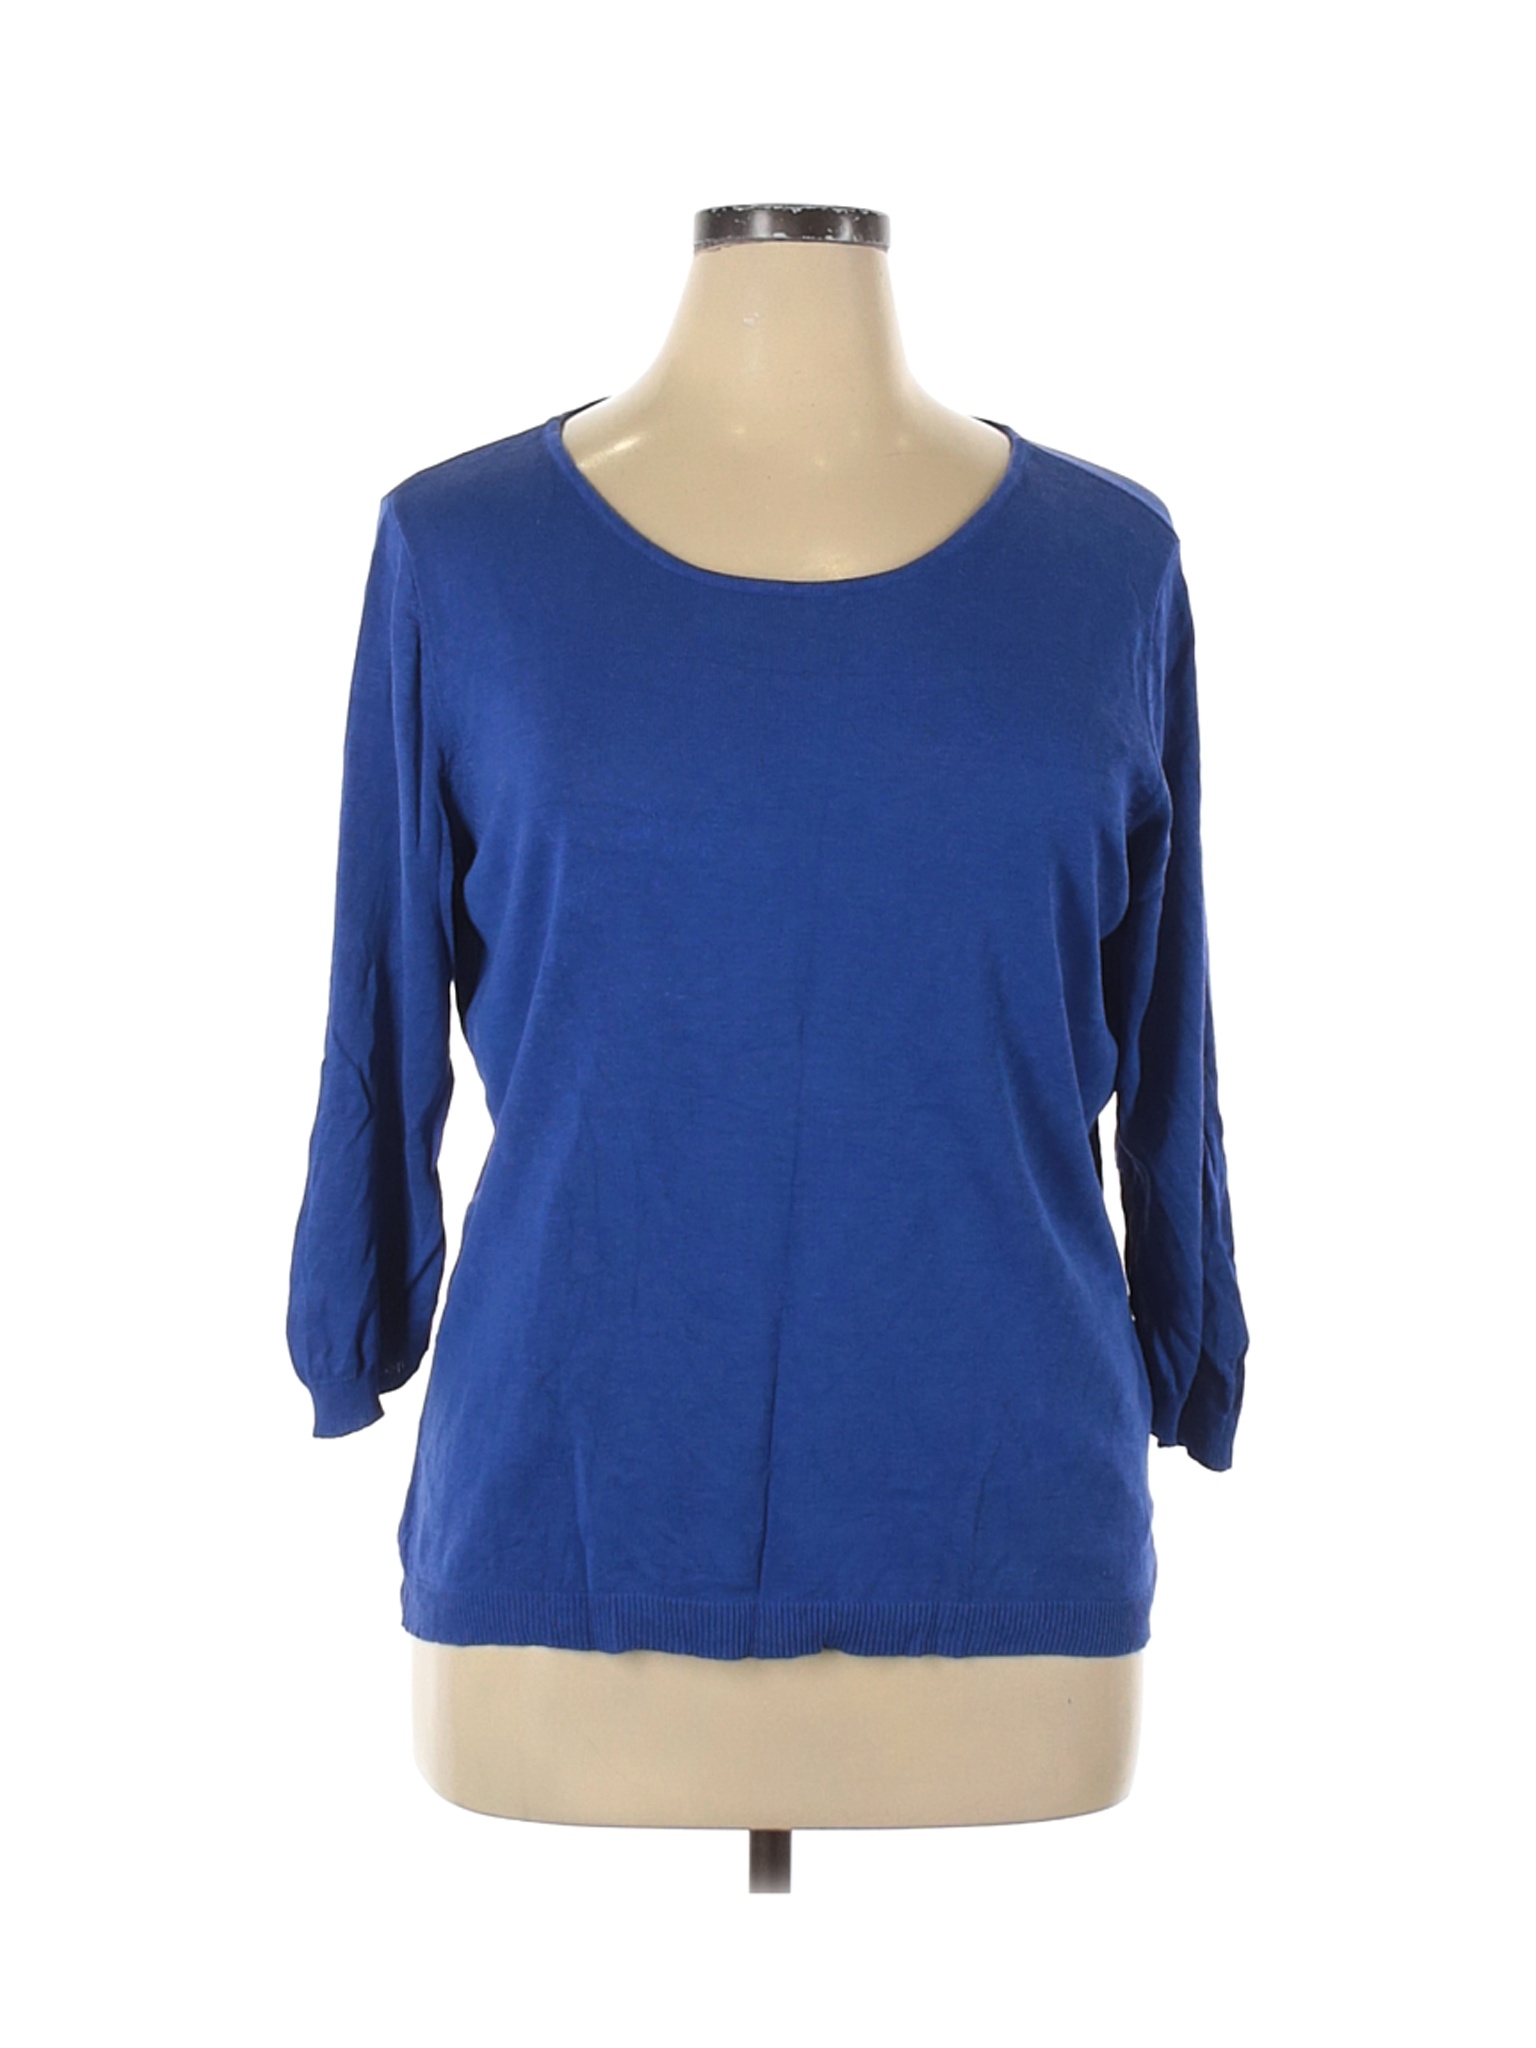 Calvin Klein Women Blue Pullover Sweater XL | eBay